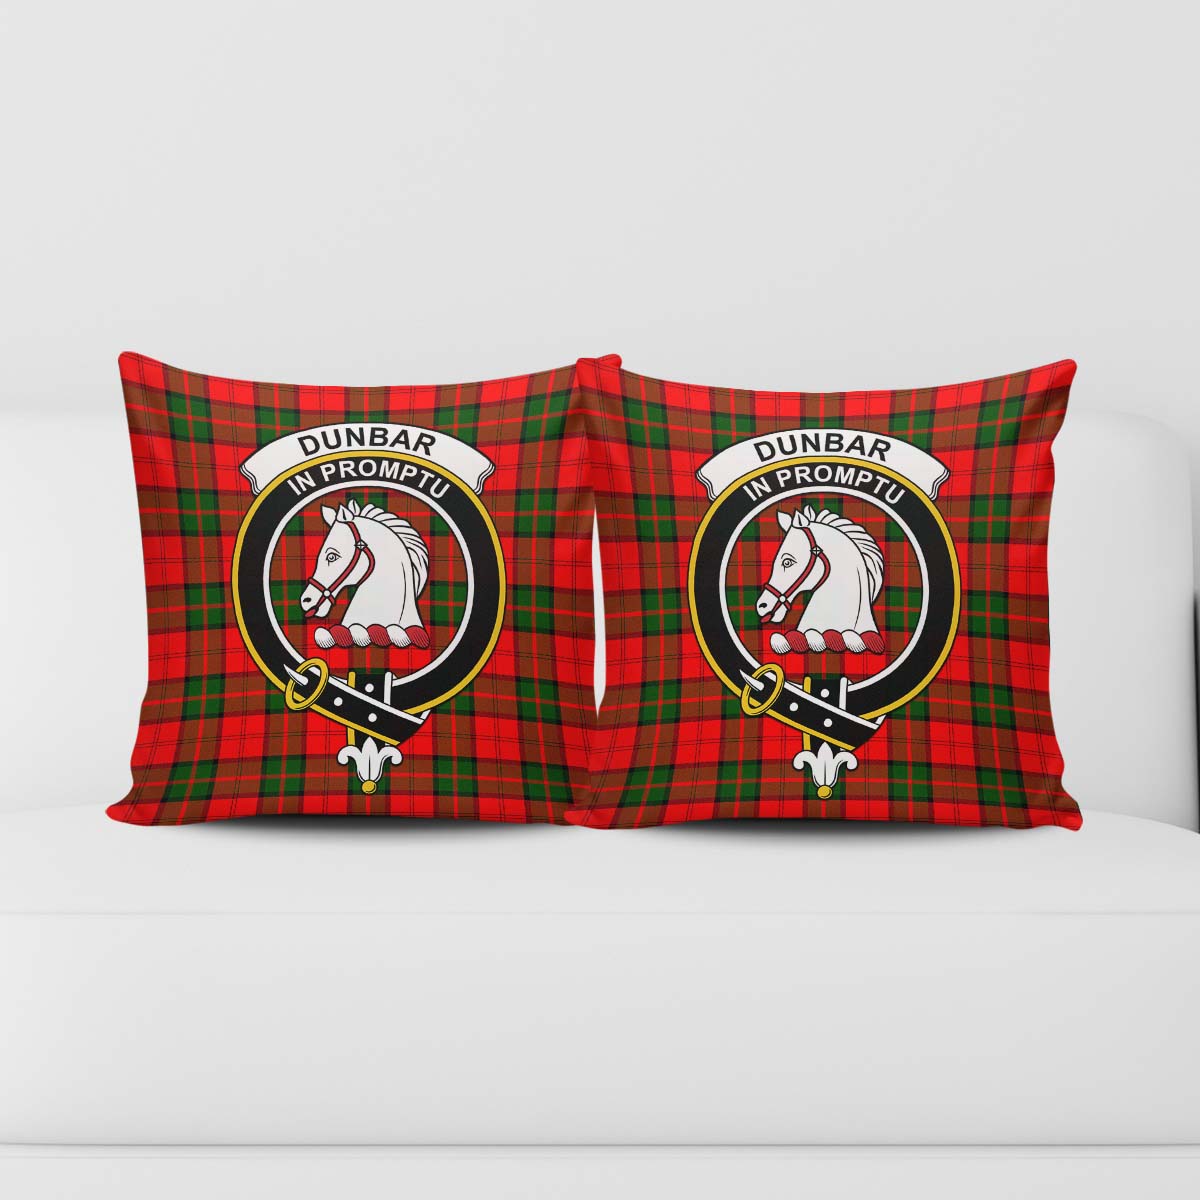 Dunbar Modern Tartan Pillow Cover with Family Crest - Tartanvibesclothing